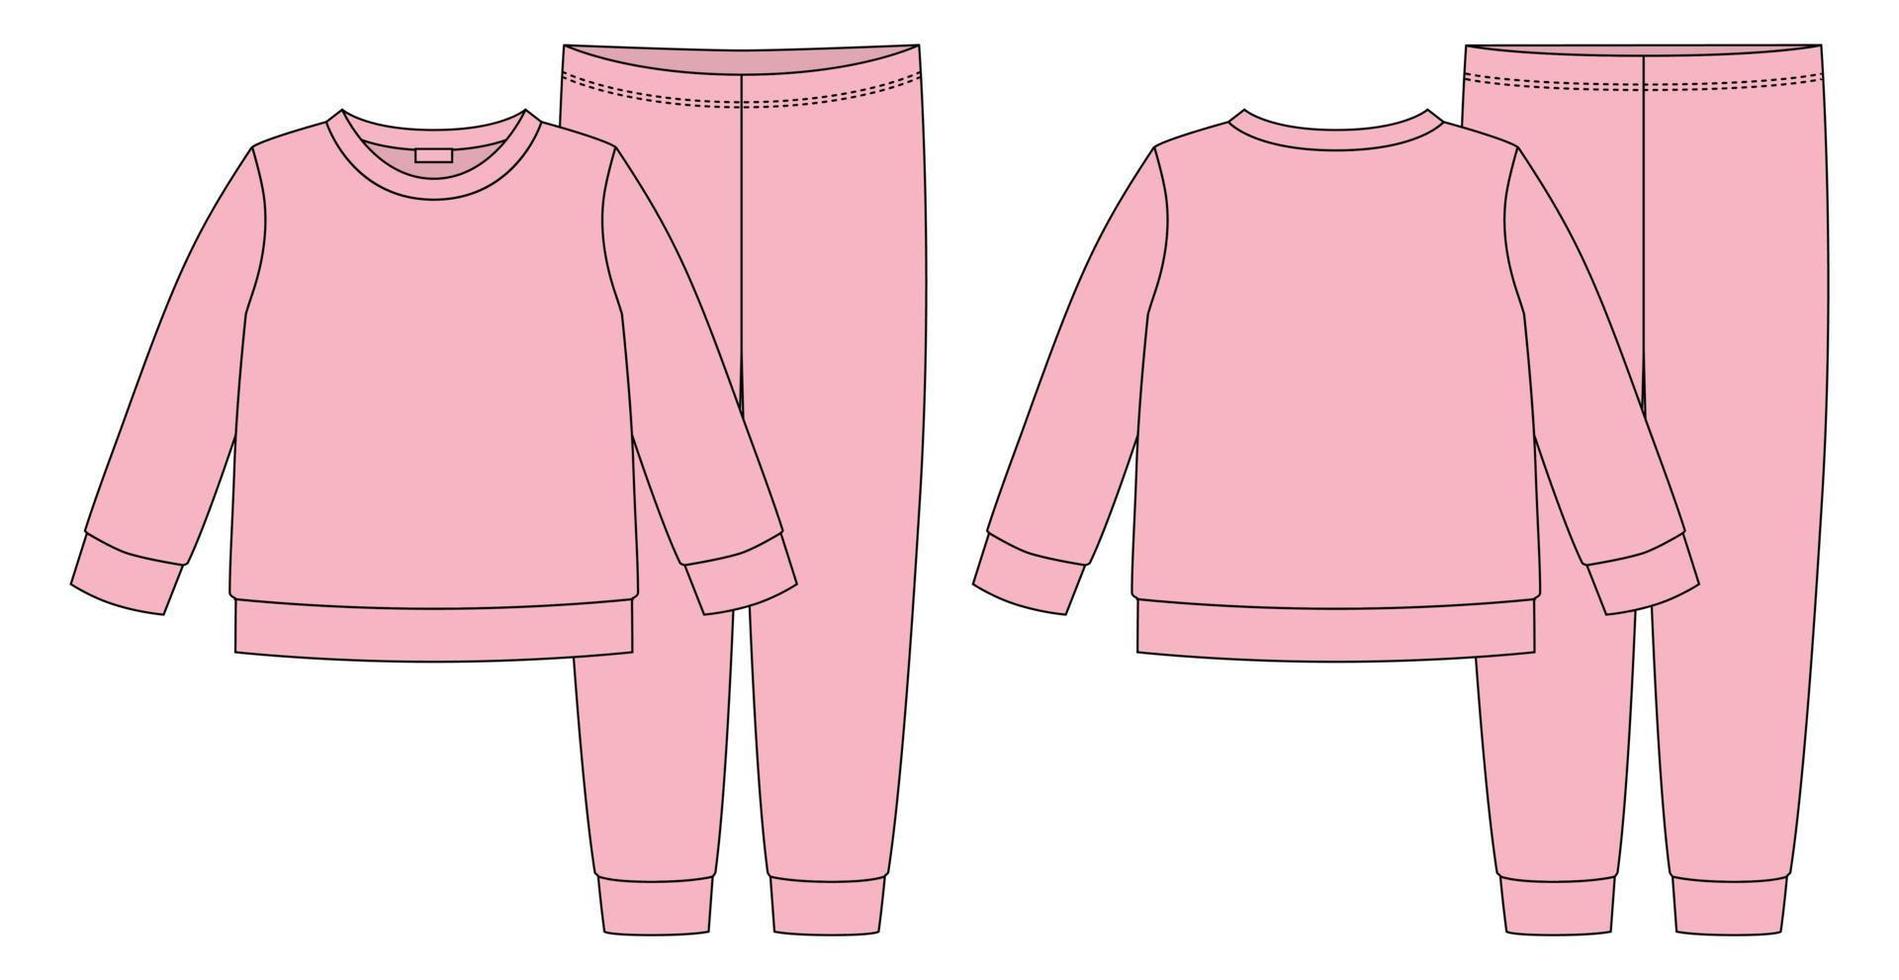 schizzo tecnico abbigliamento pigiama. colore rosa pesca. felpa e pantaloni in cotone per bambini. vettore